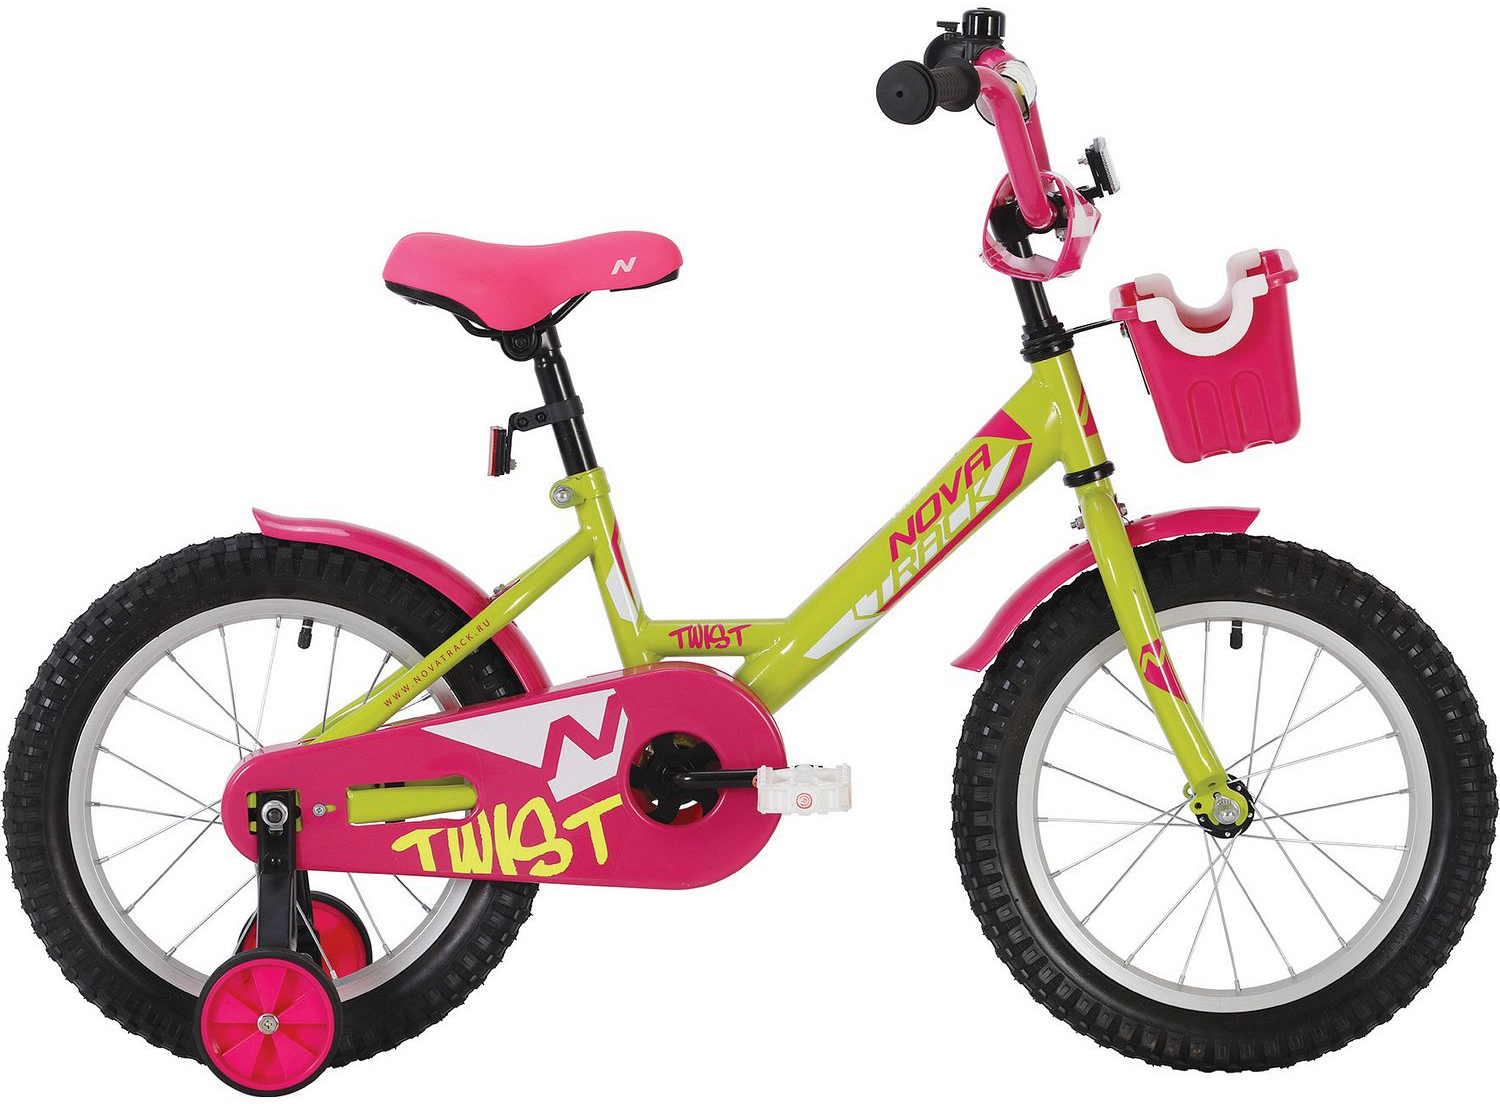  Отзывы о Детском велосипеде Novatrack Twist 16 с корзиной 2020